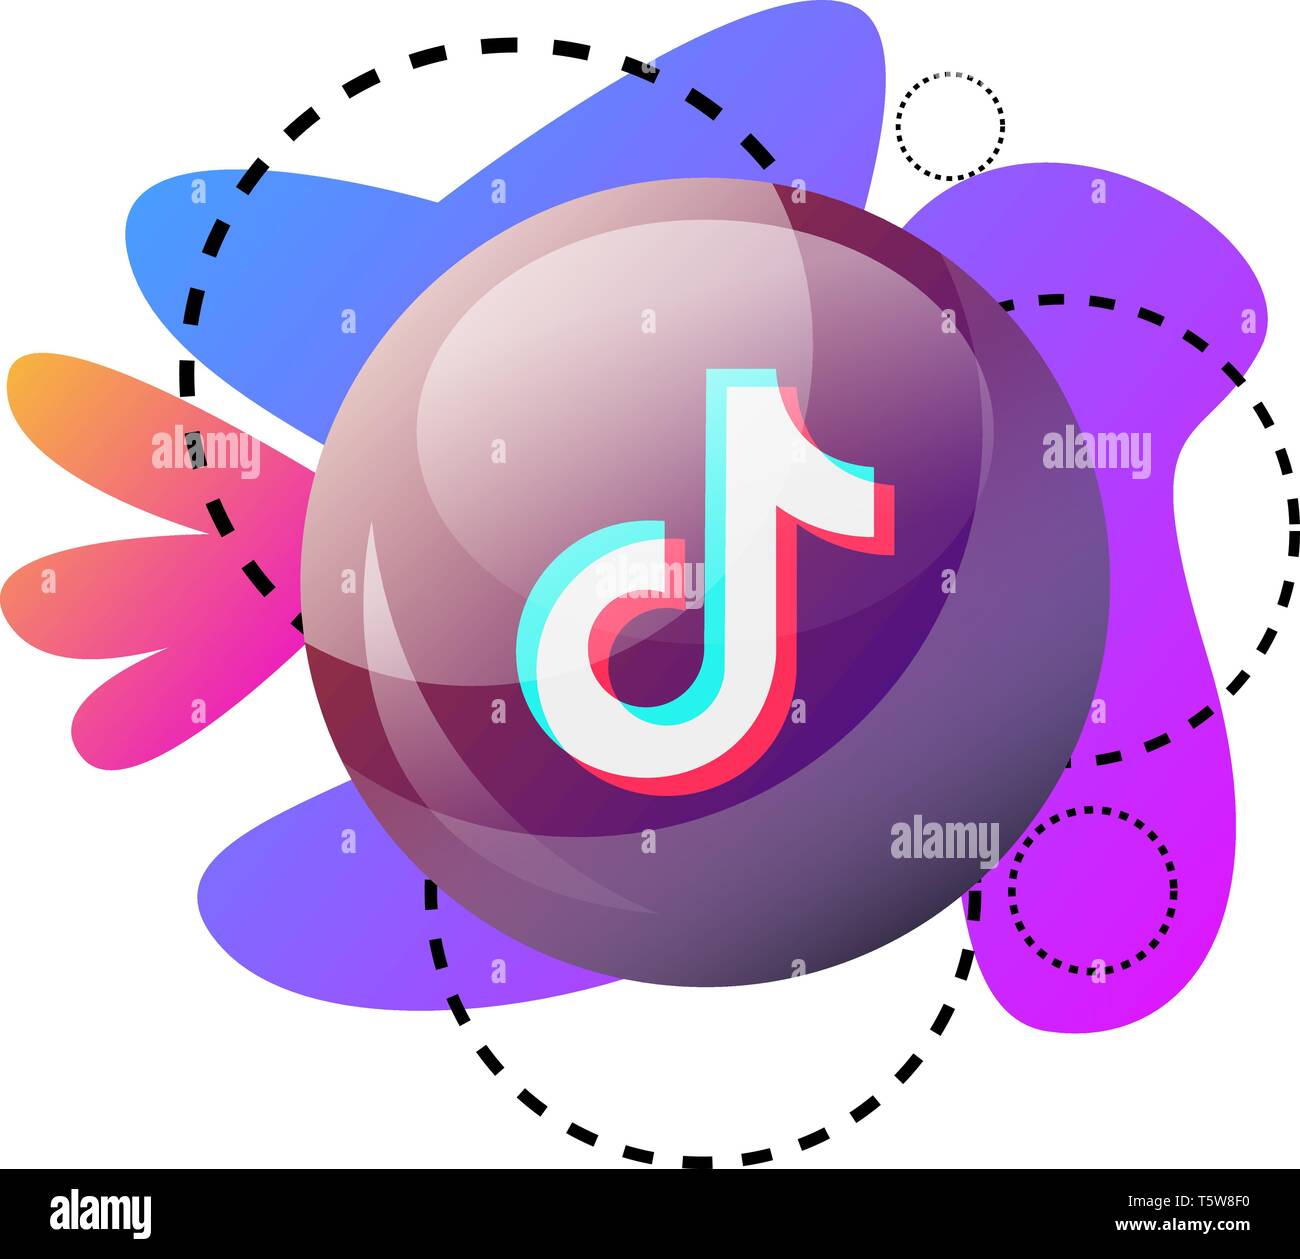 Logo TikTok tròn với đồ họa màu tím, hồng và xanh dương: Đây chính là logo chính thức của TikTok, với sự pha trộn màu tím, hồng và xanh dương đầy sáng tạo. Nhìn vào đó, bạn sẽ thấy được sự tươi trẻ, năng động, đầy màu sắc của ứng dụng này!